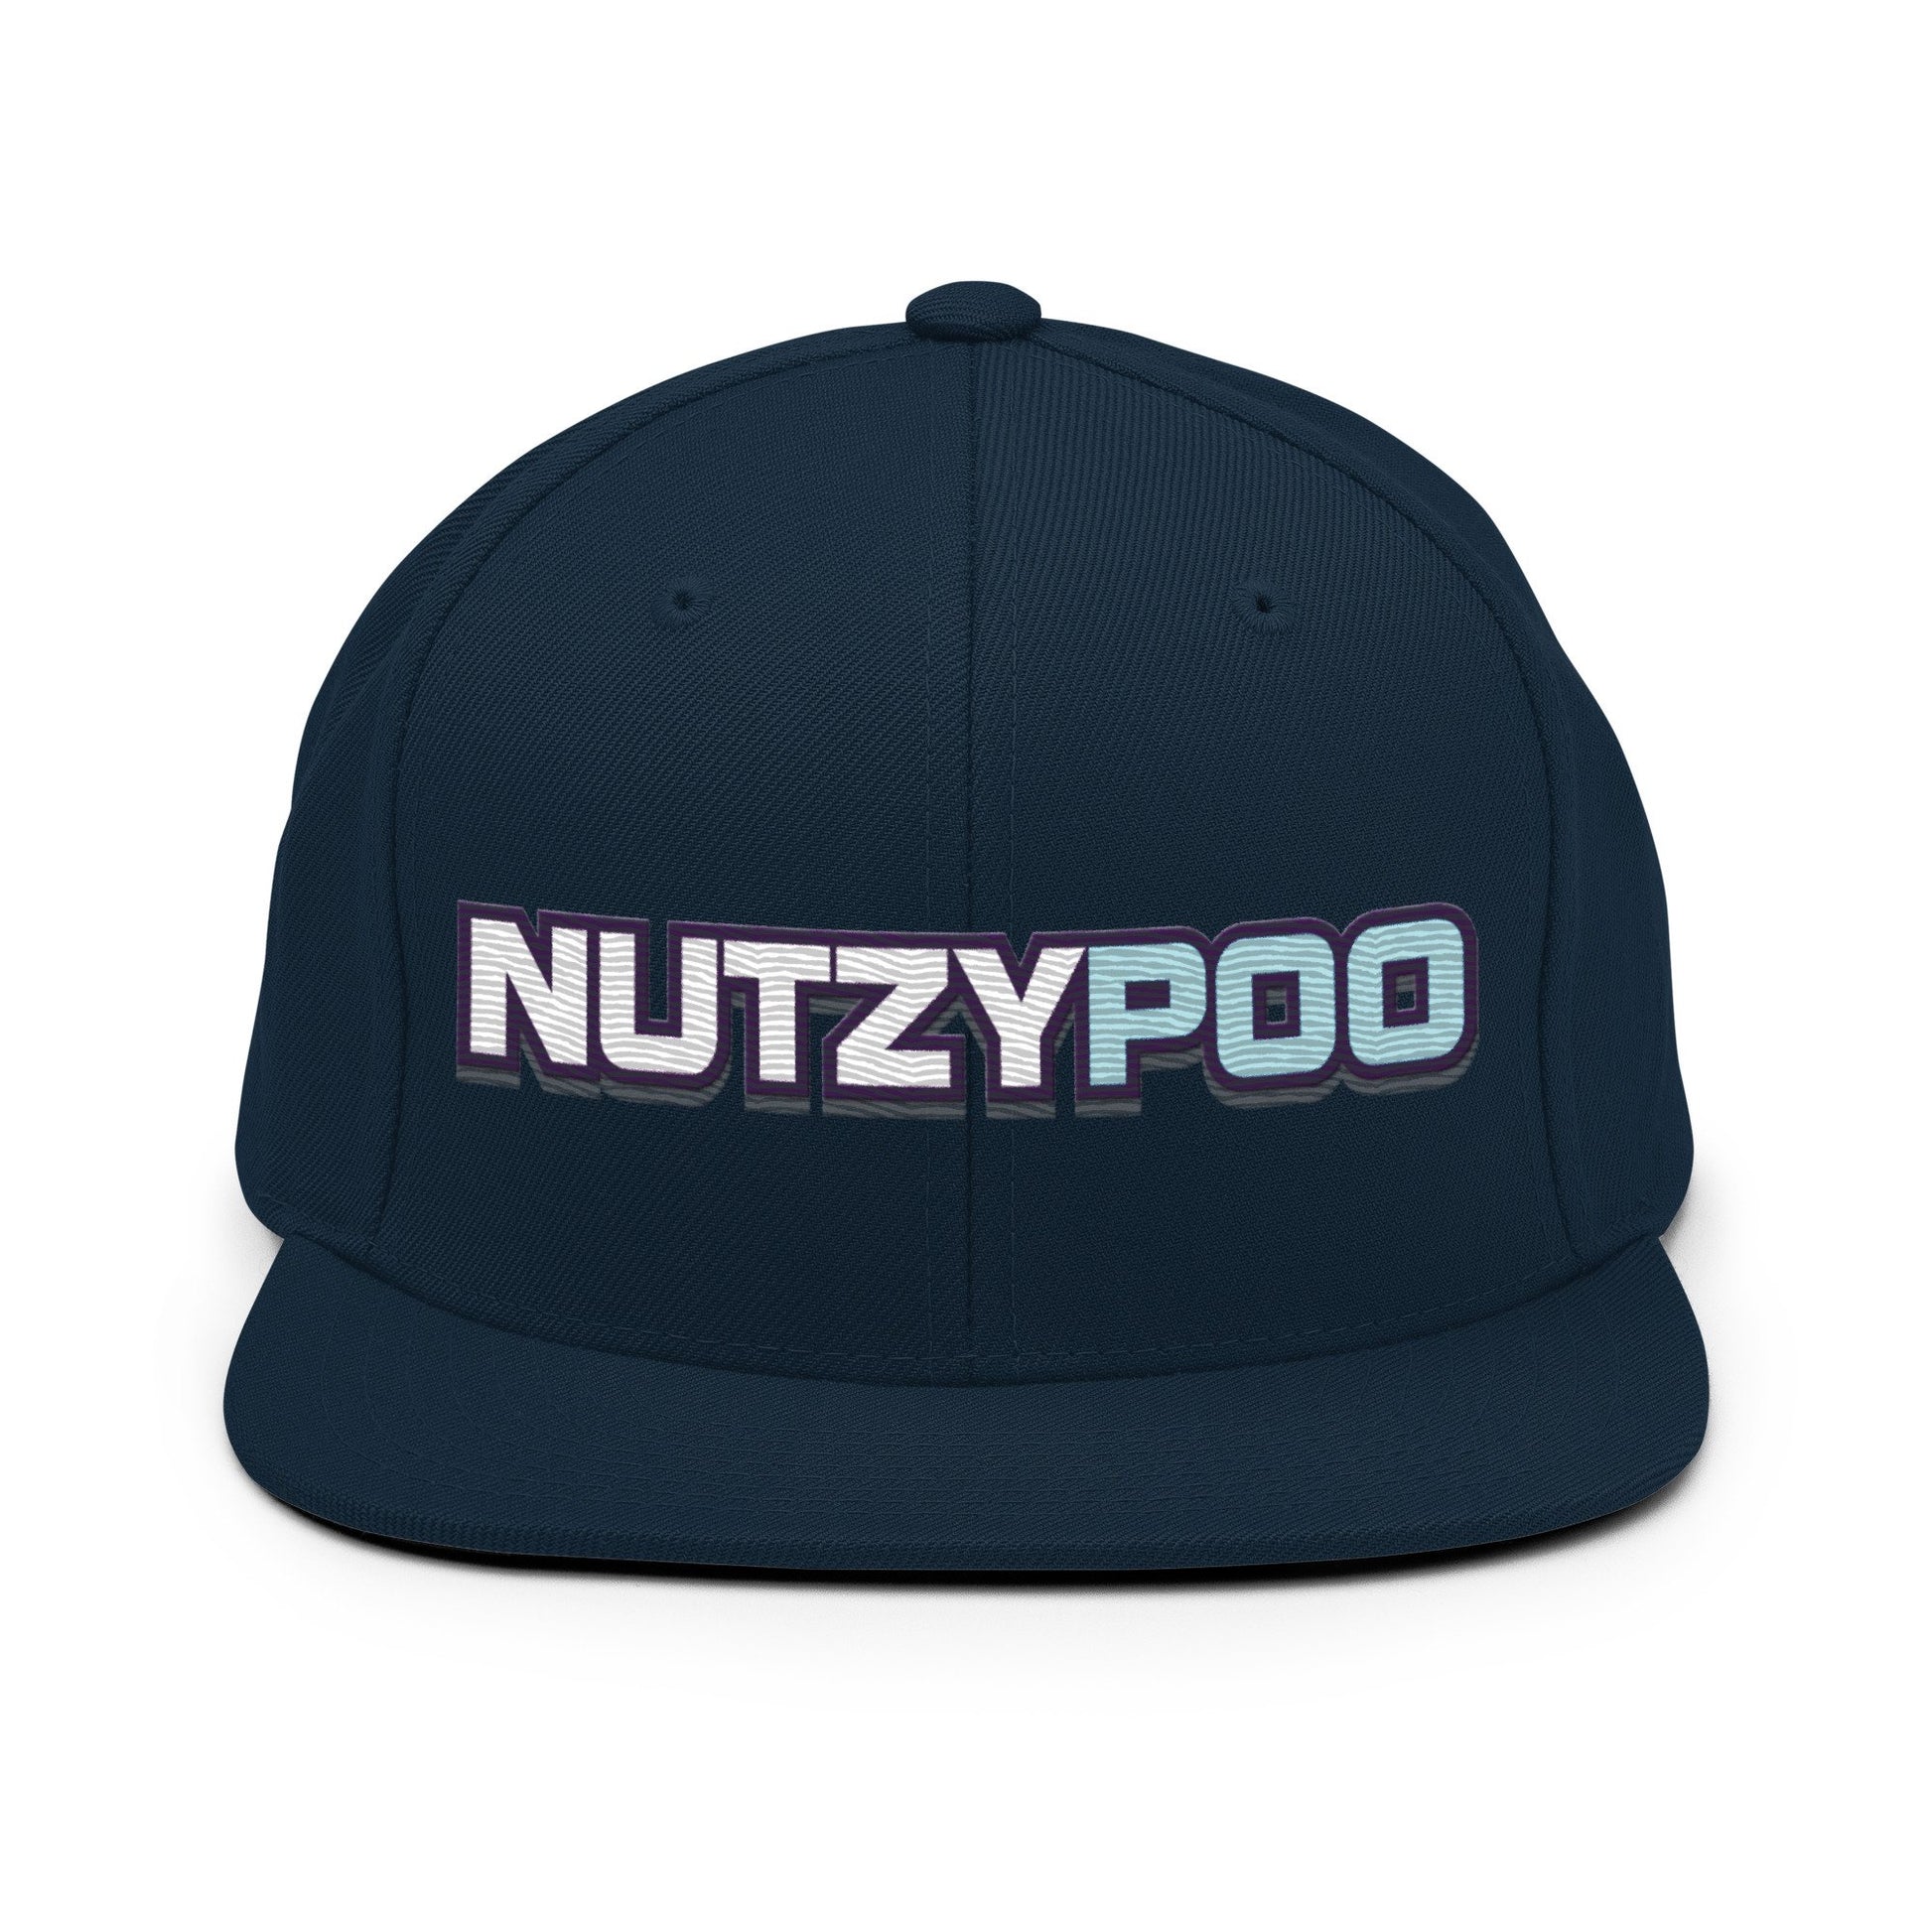 NutzyPoo ShowZone hat in dark navy